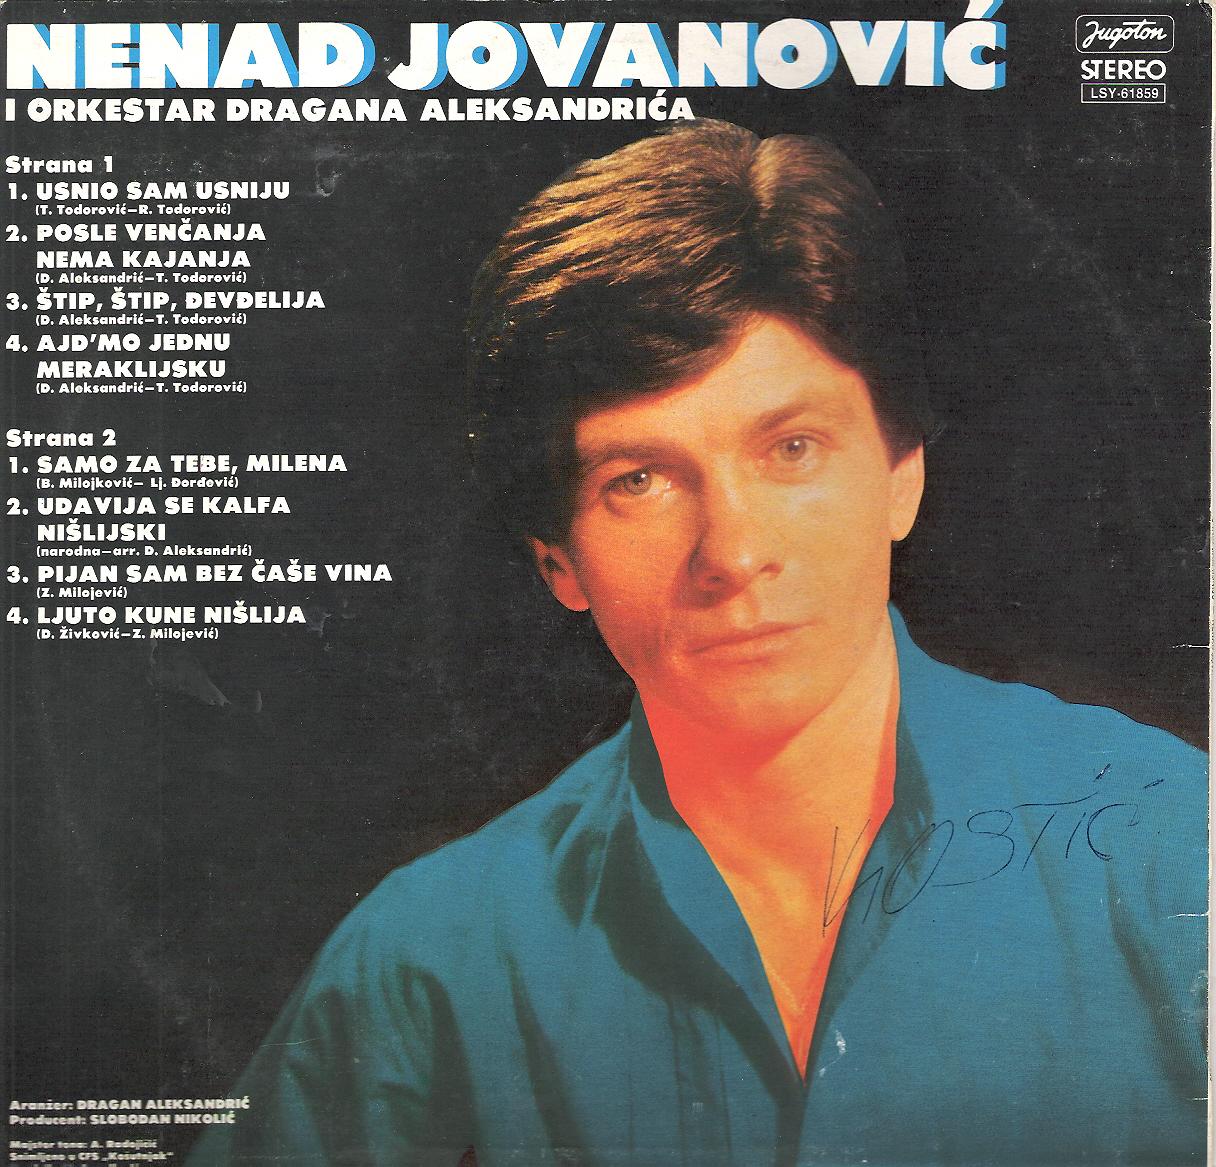 Nenad Jovanovic 1983 Zadnja